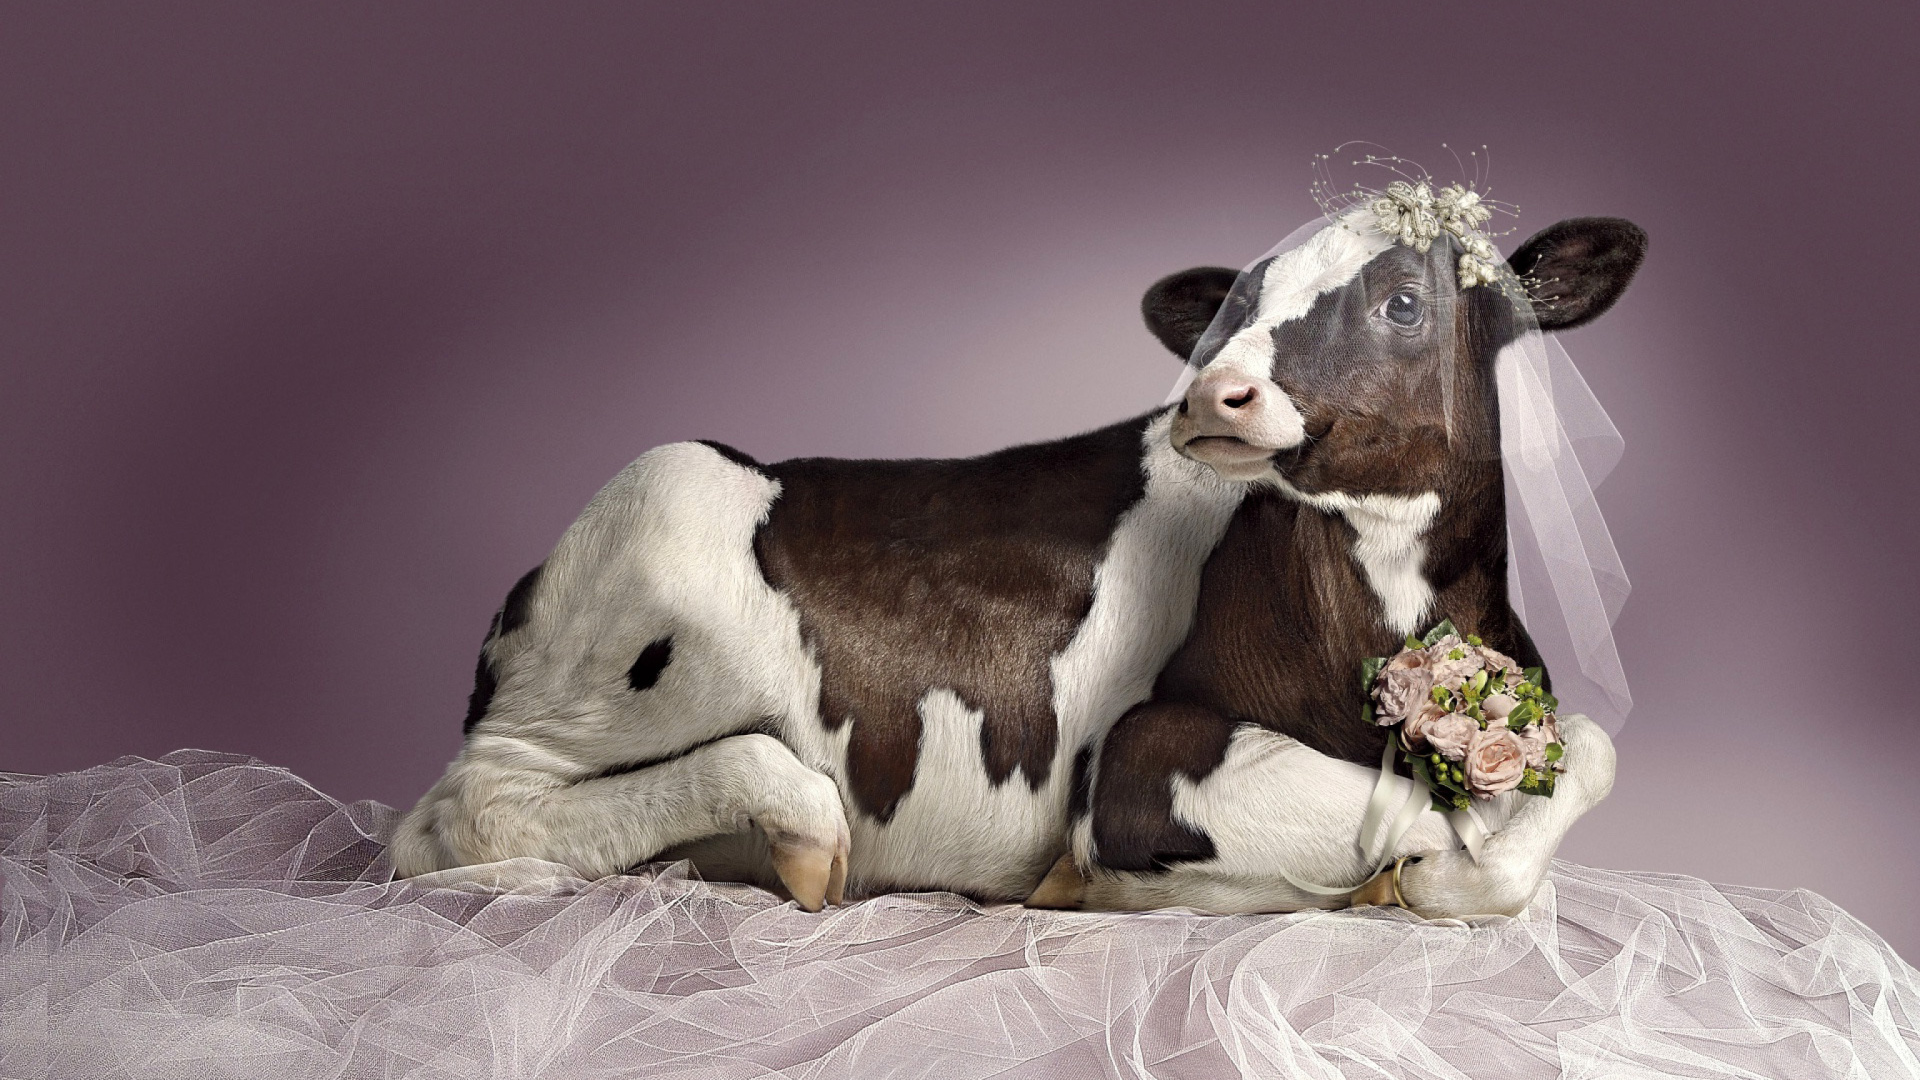 Bride Cow wallpaper 1920x1080